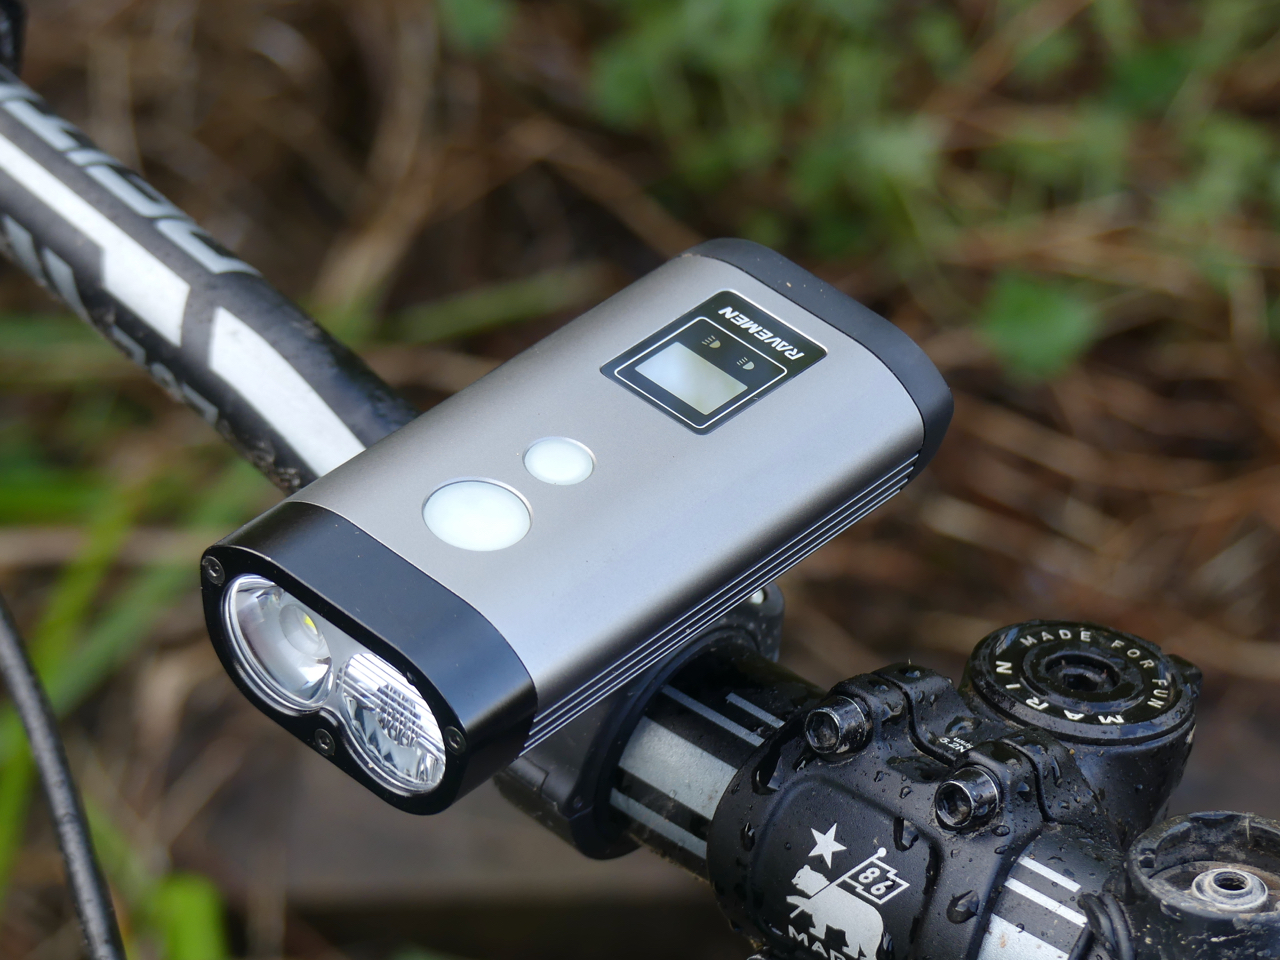 Led front light PR1600-1600 lumen Ravemen bike lighting